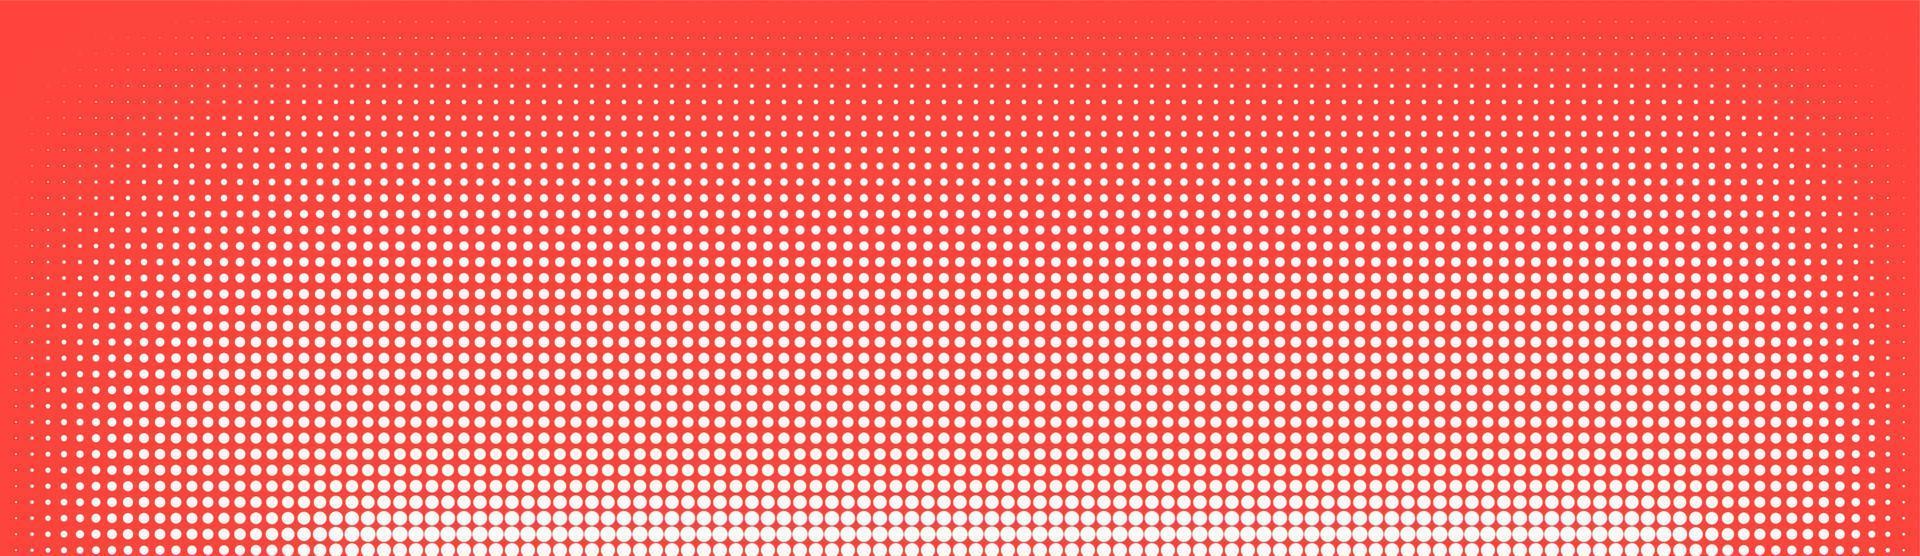 semitono en estilo abstracto. textura de vector de banner retro geométrico. impresión moderna. fondo blanco y rojo. efecto de luz